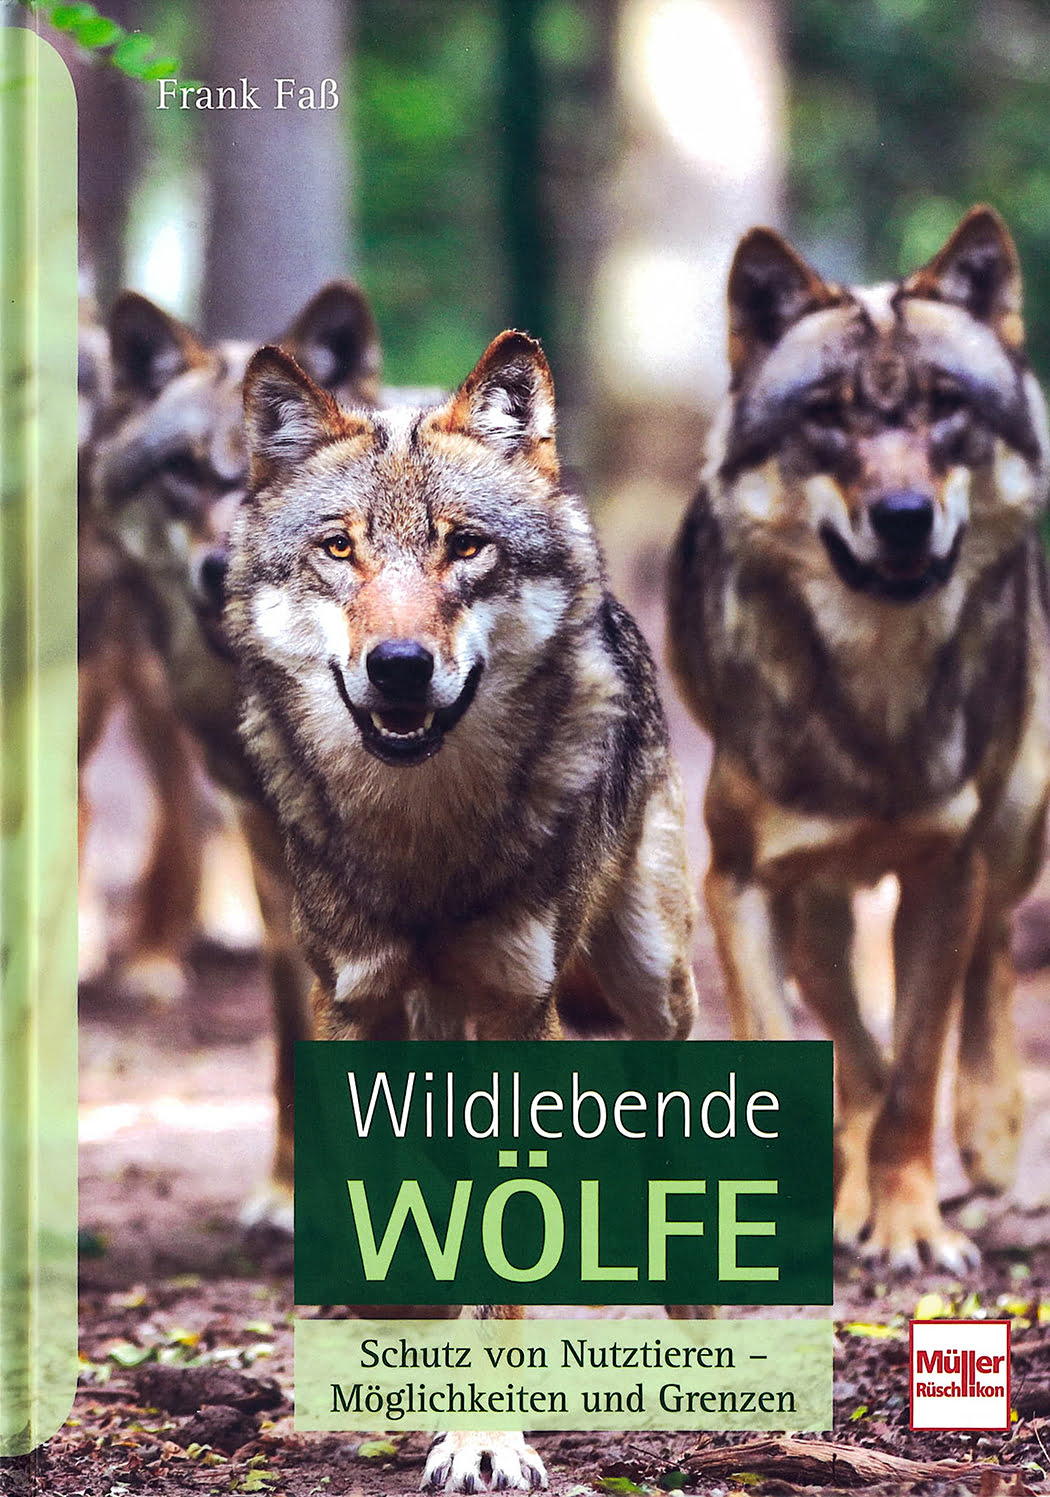 Wolfcenter Woelfe Zoo Wildpark Tiergehege Frank Fass Buch Herdenschutz